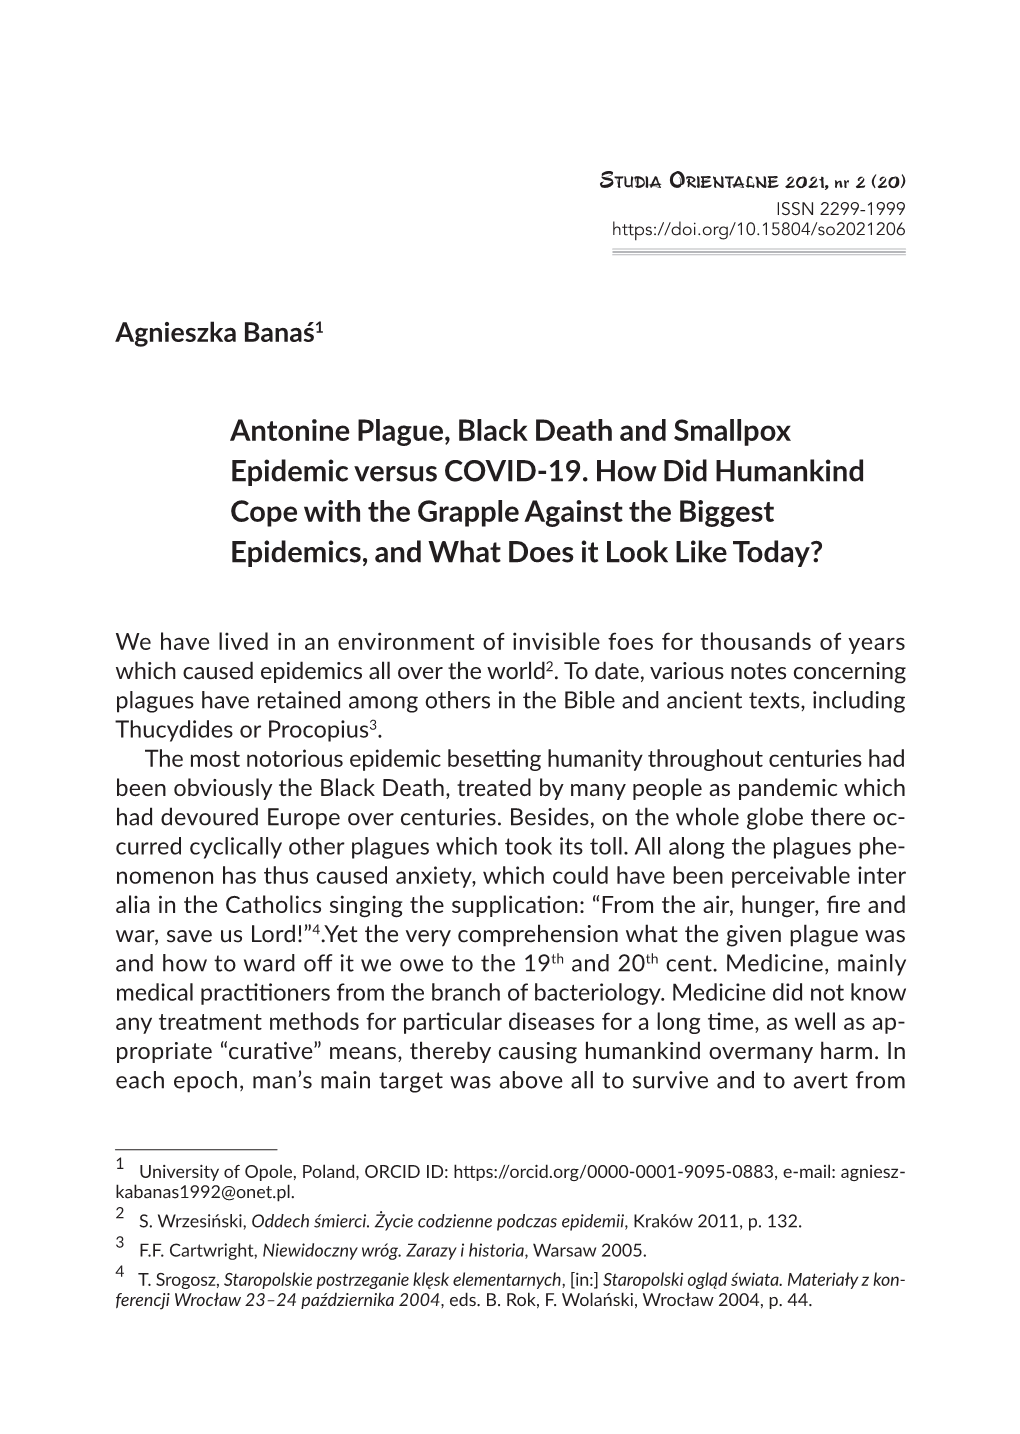 Antonine Plague, Black Death and Smallpox Epidemic Versus COVID-19